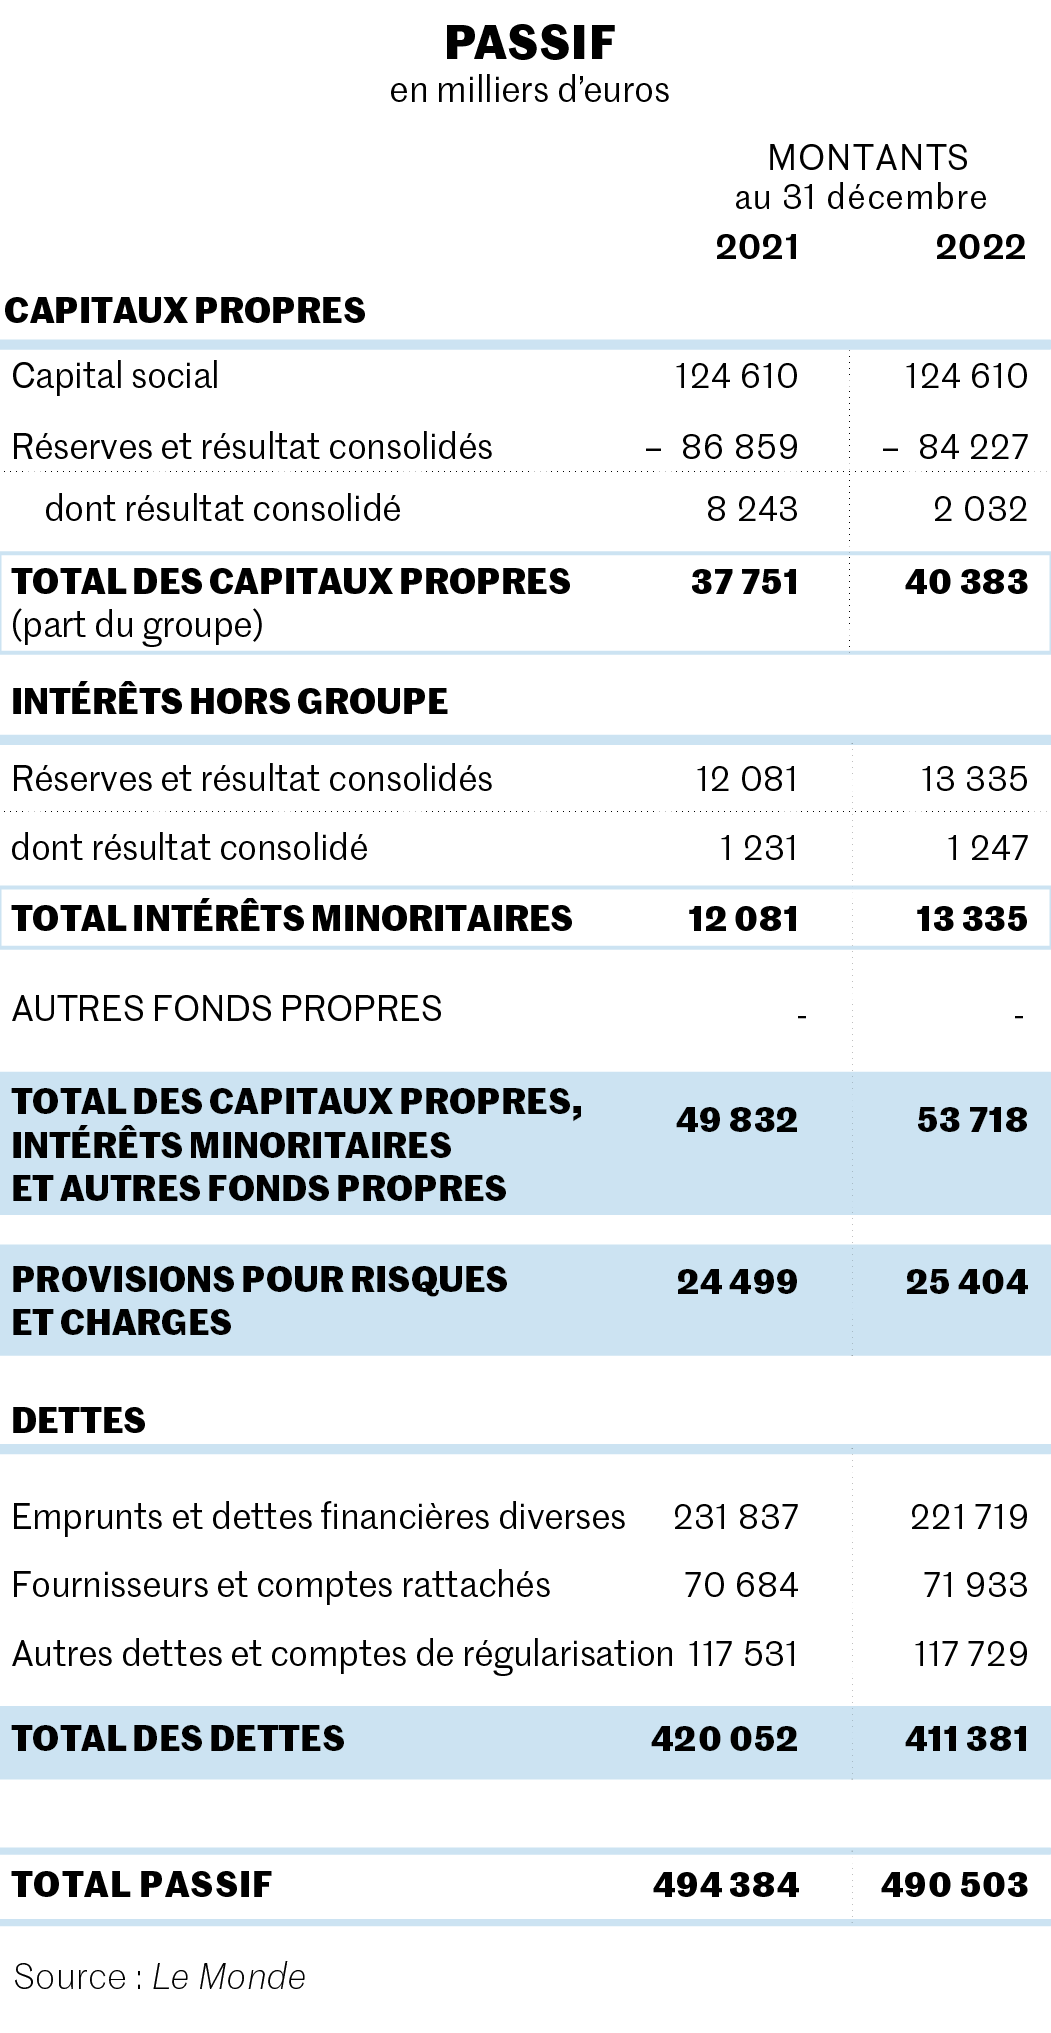 Groupe Le Monde : des résultats bénéficiaires en 2022 malgré des charges  industrielles alourdies